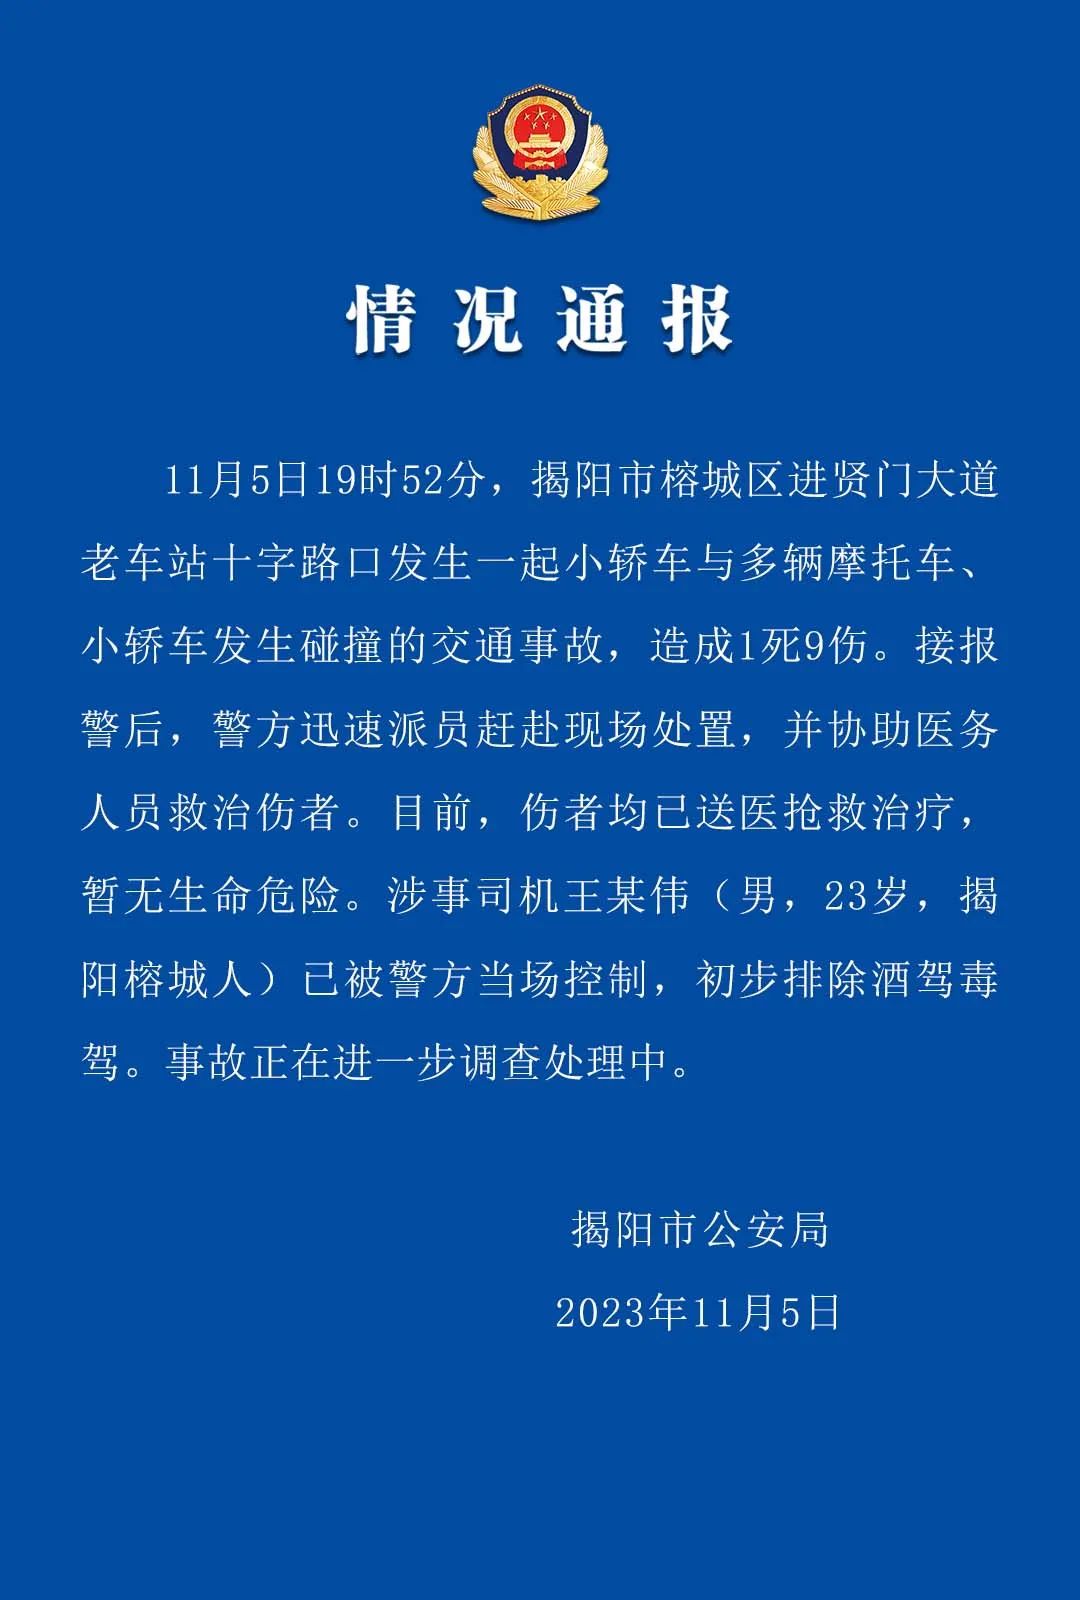 广东揭阳发生多车碰撞事故 造成1死9伤